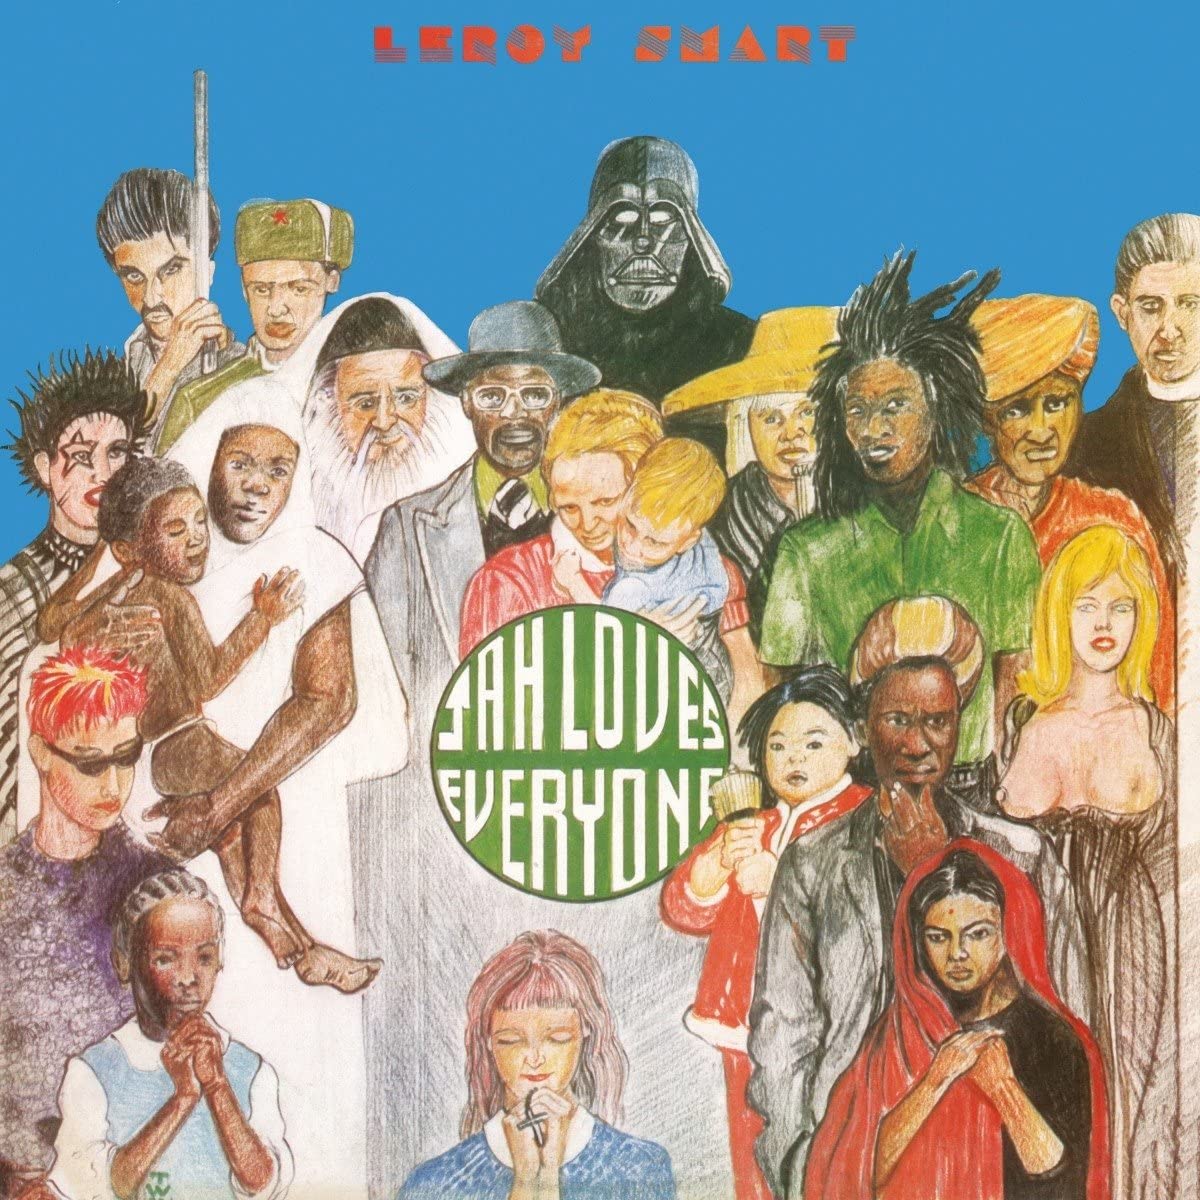 Smart, Leroy/Jah Loves Everyone [LP]